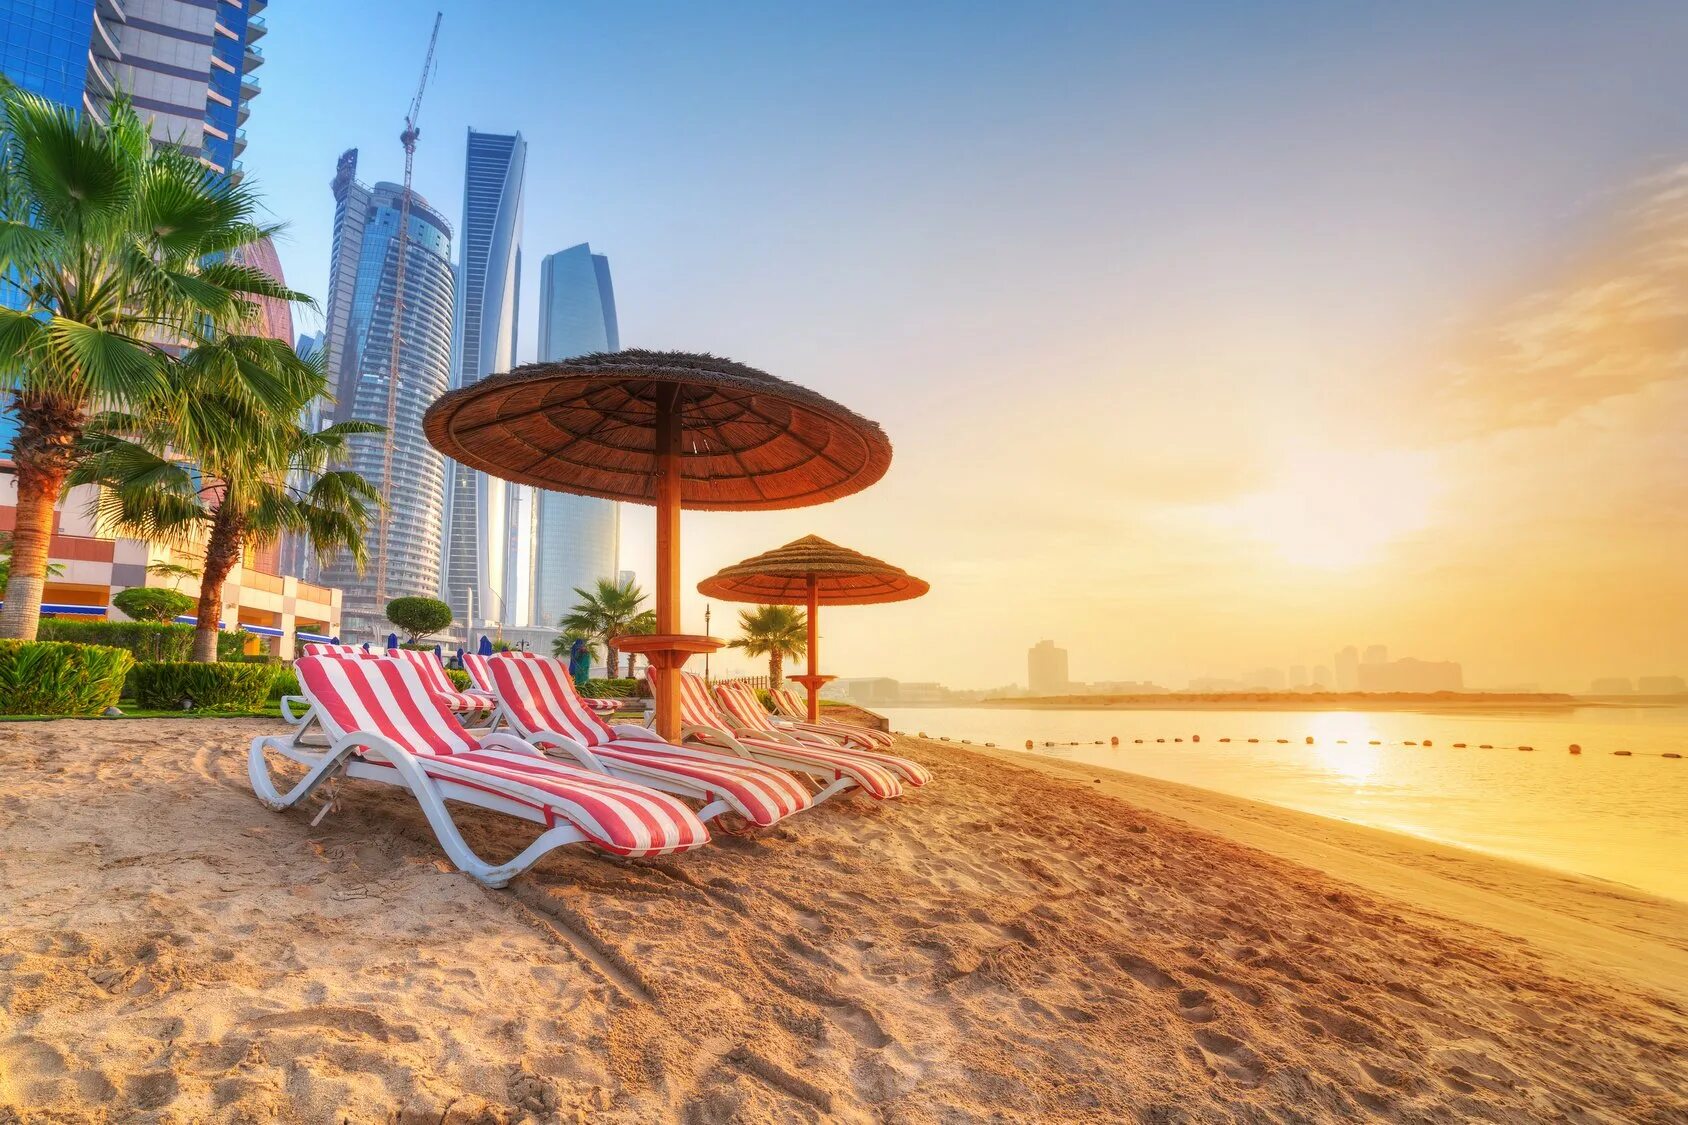 Пляж Сансет Дубай. Абу Даби пляжи. ОАЭ Абу Даби пляжи. Арабские эмираты Шарджа пляжи. Пляж араб